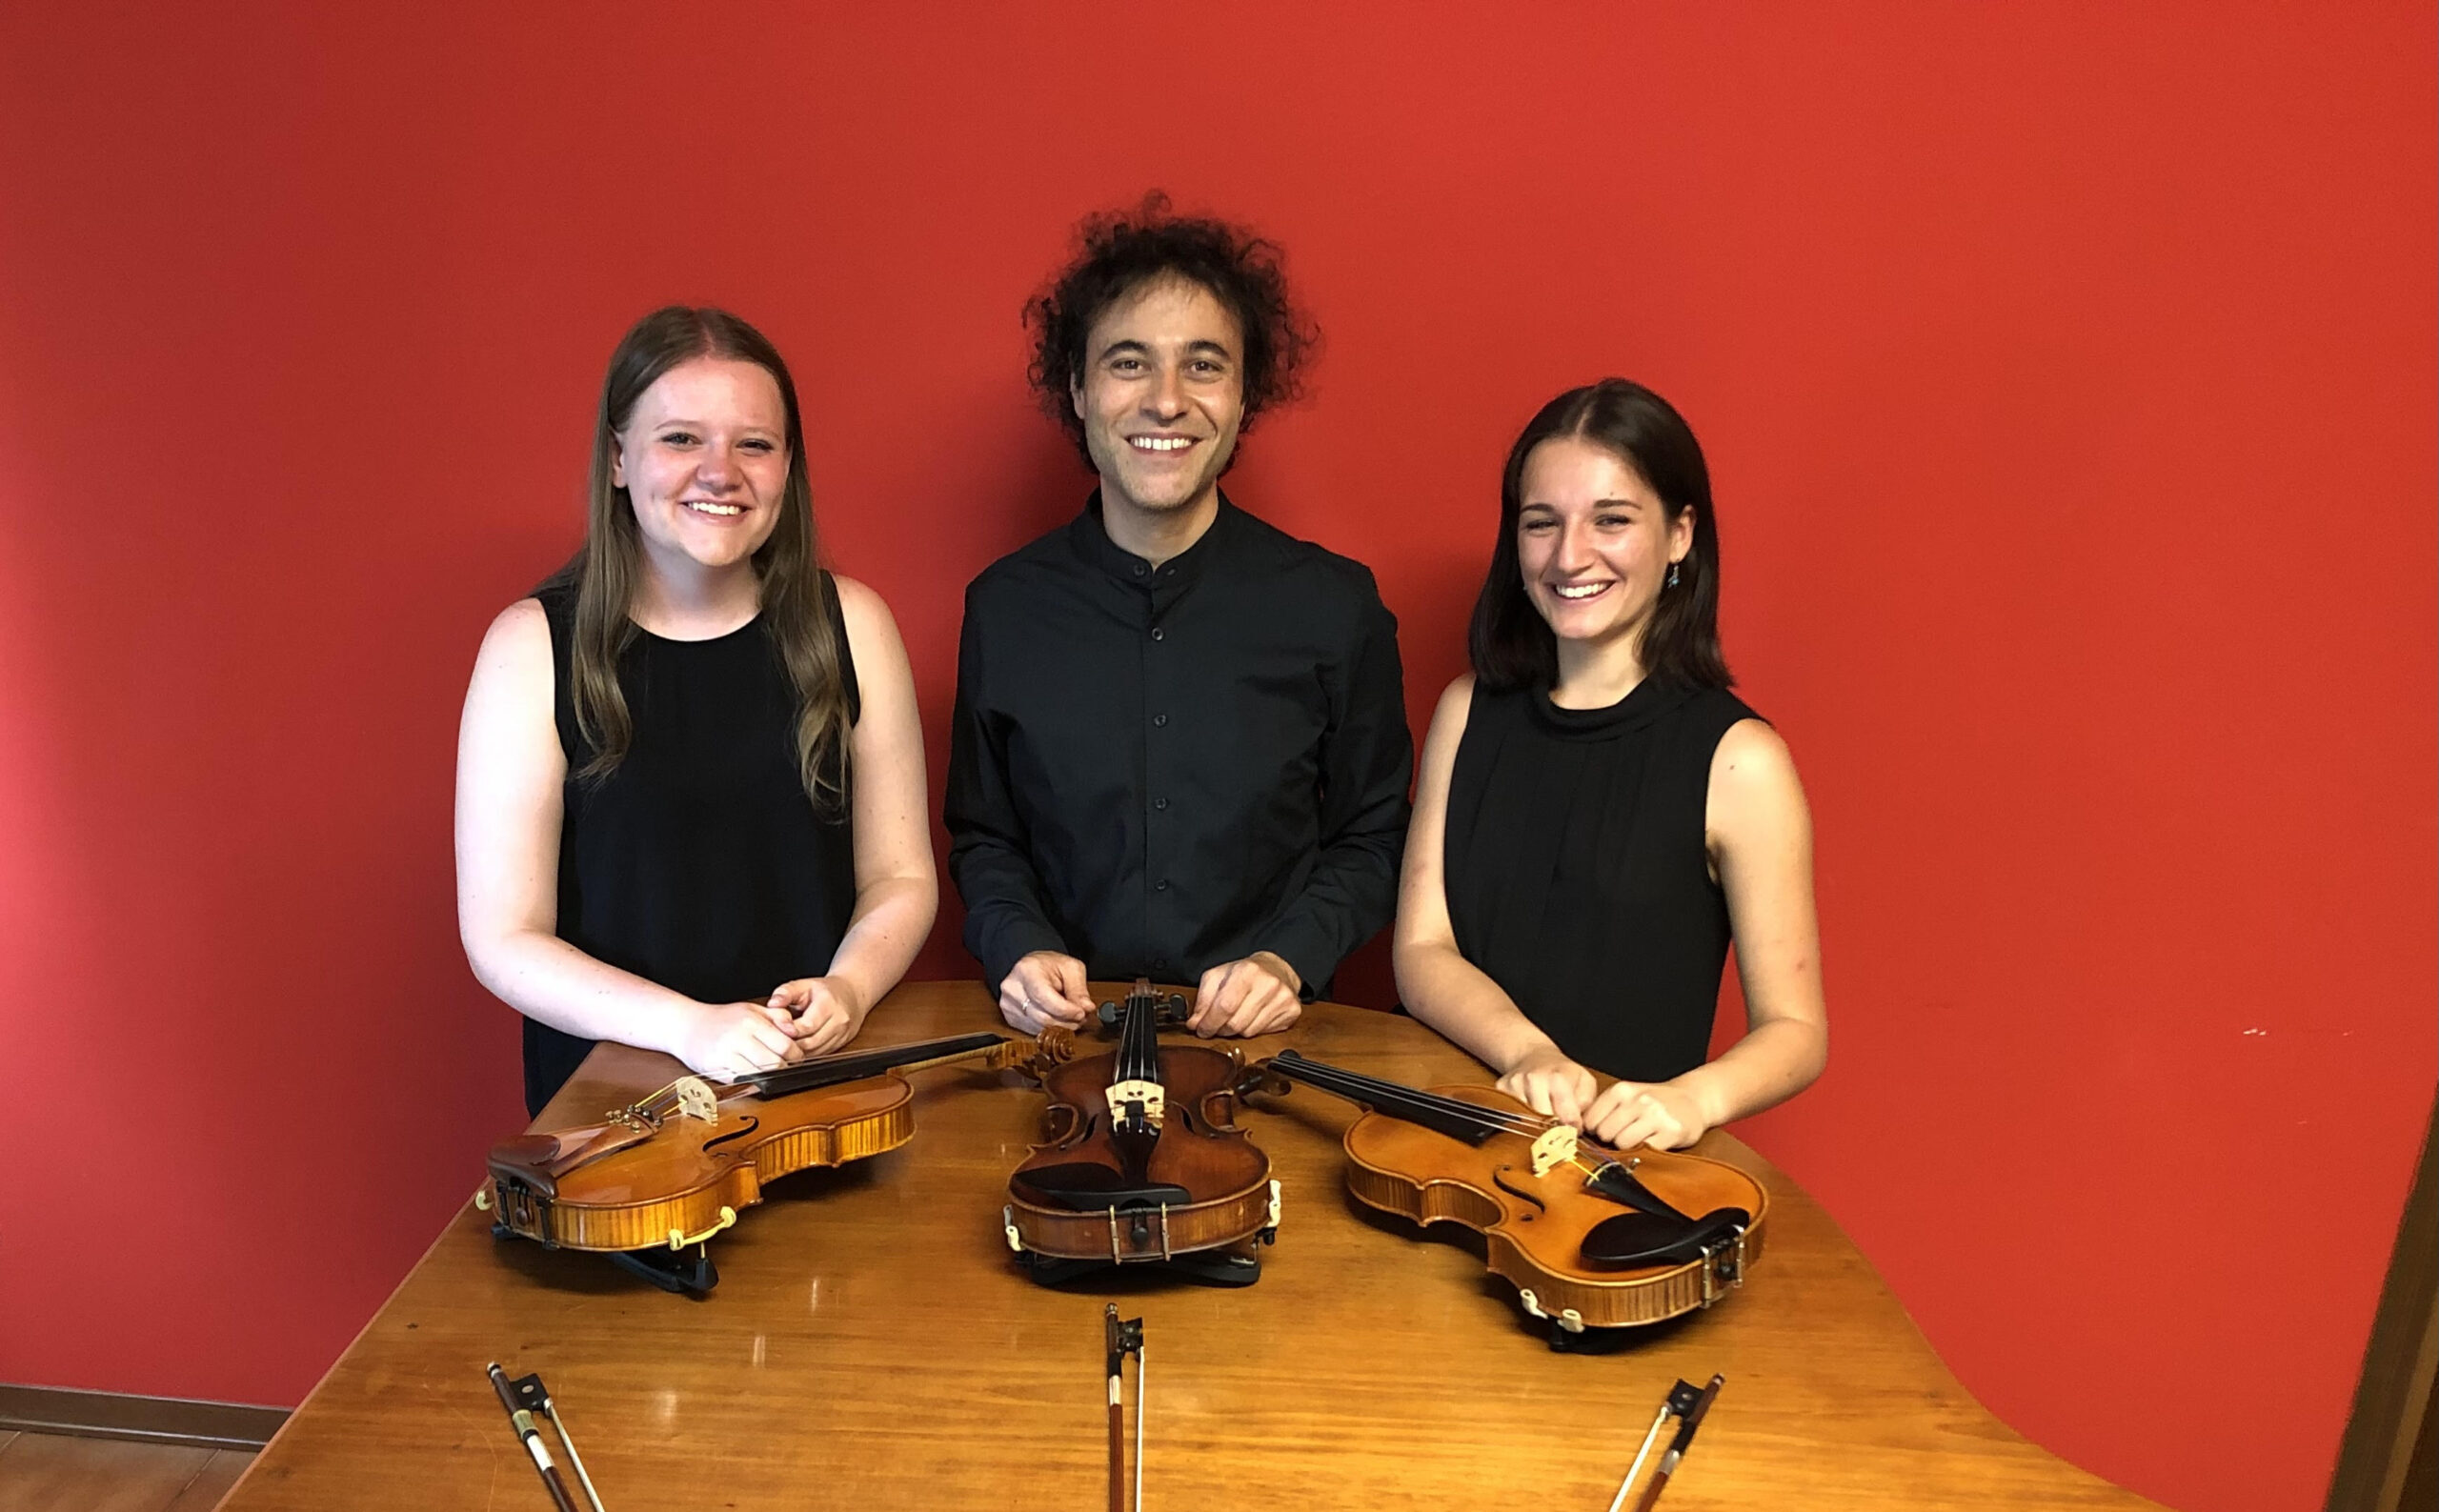 Domani alla Casa della Musica il trio di violini formato da Giacomo Scarponi, Francesca Biondi e Ilaria Scopigno